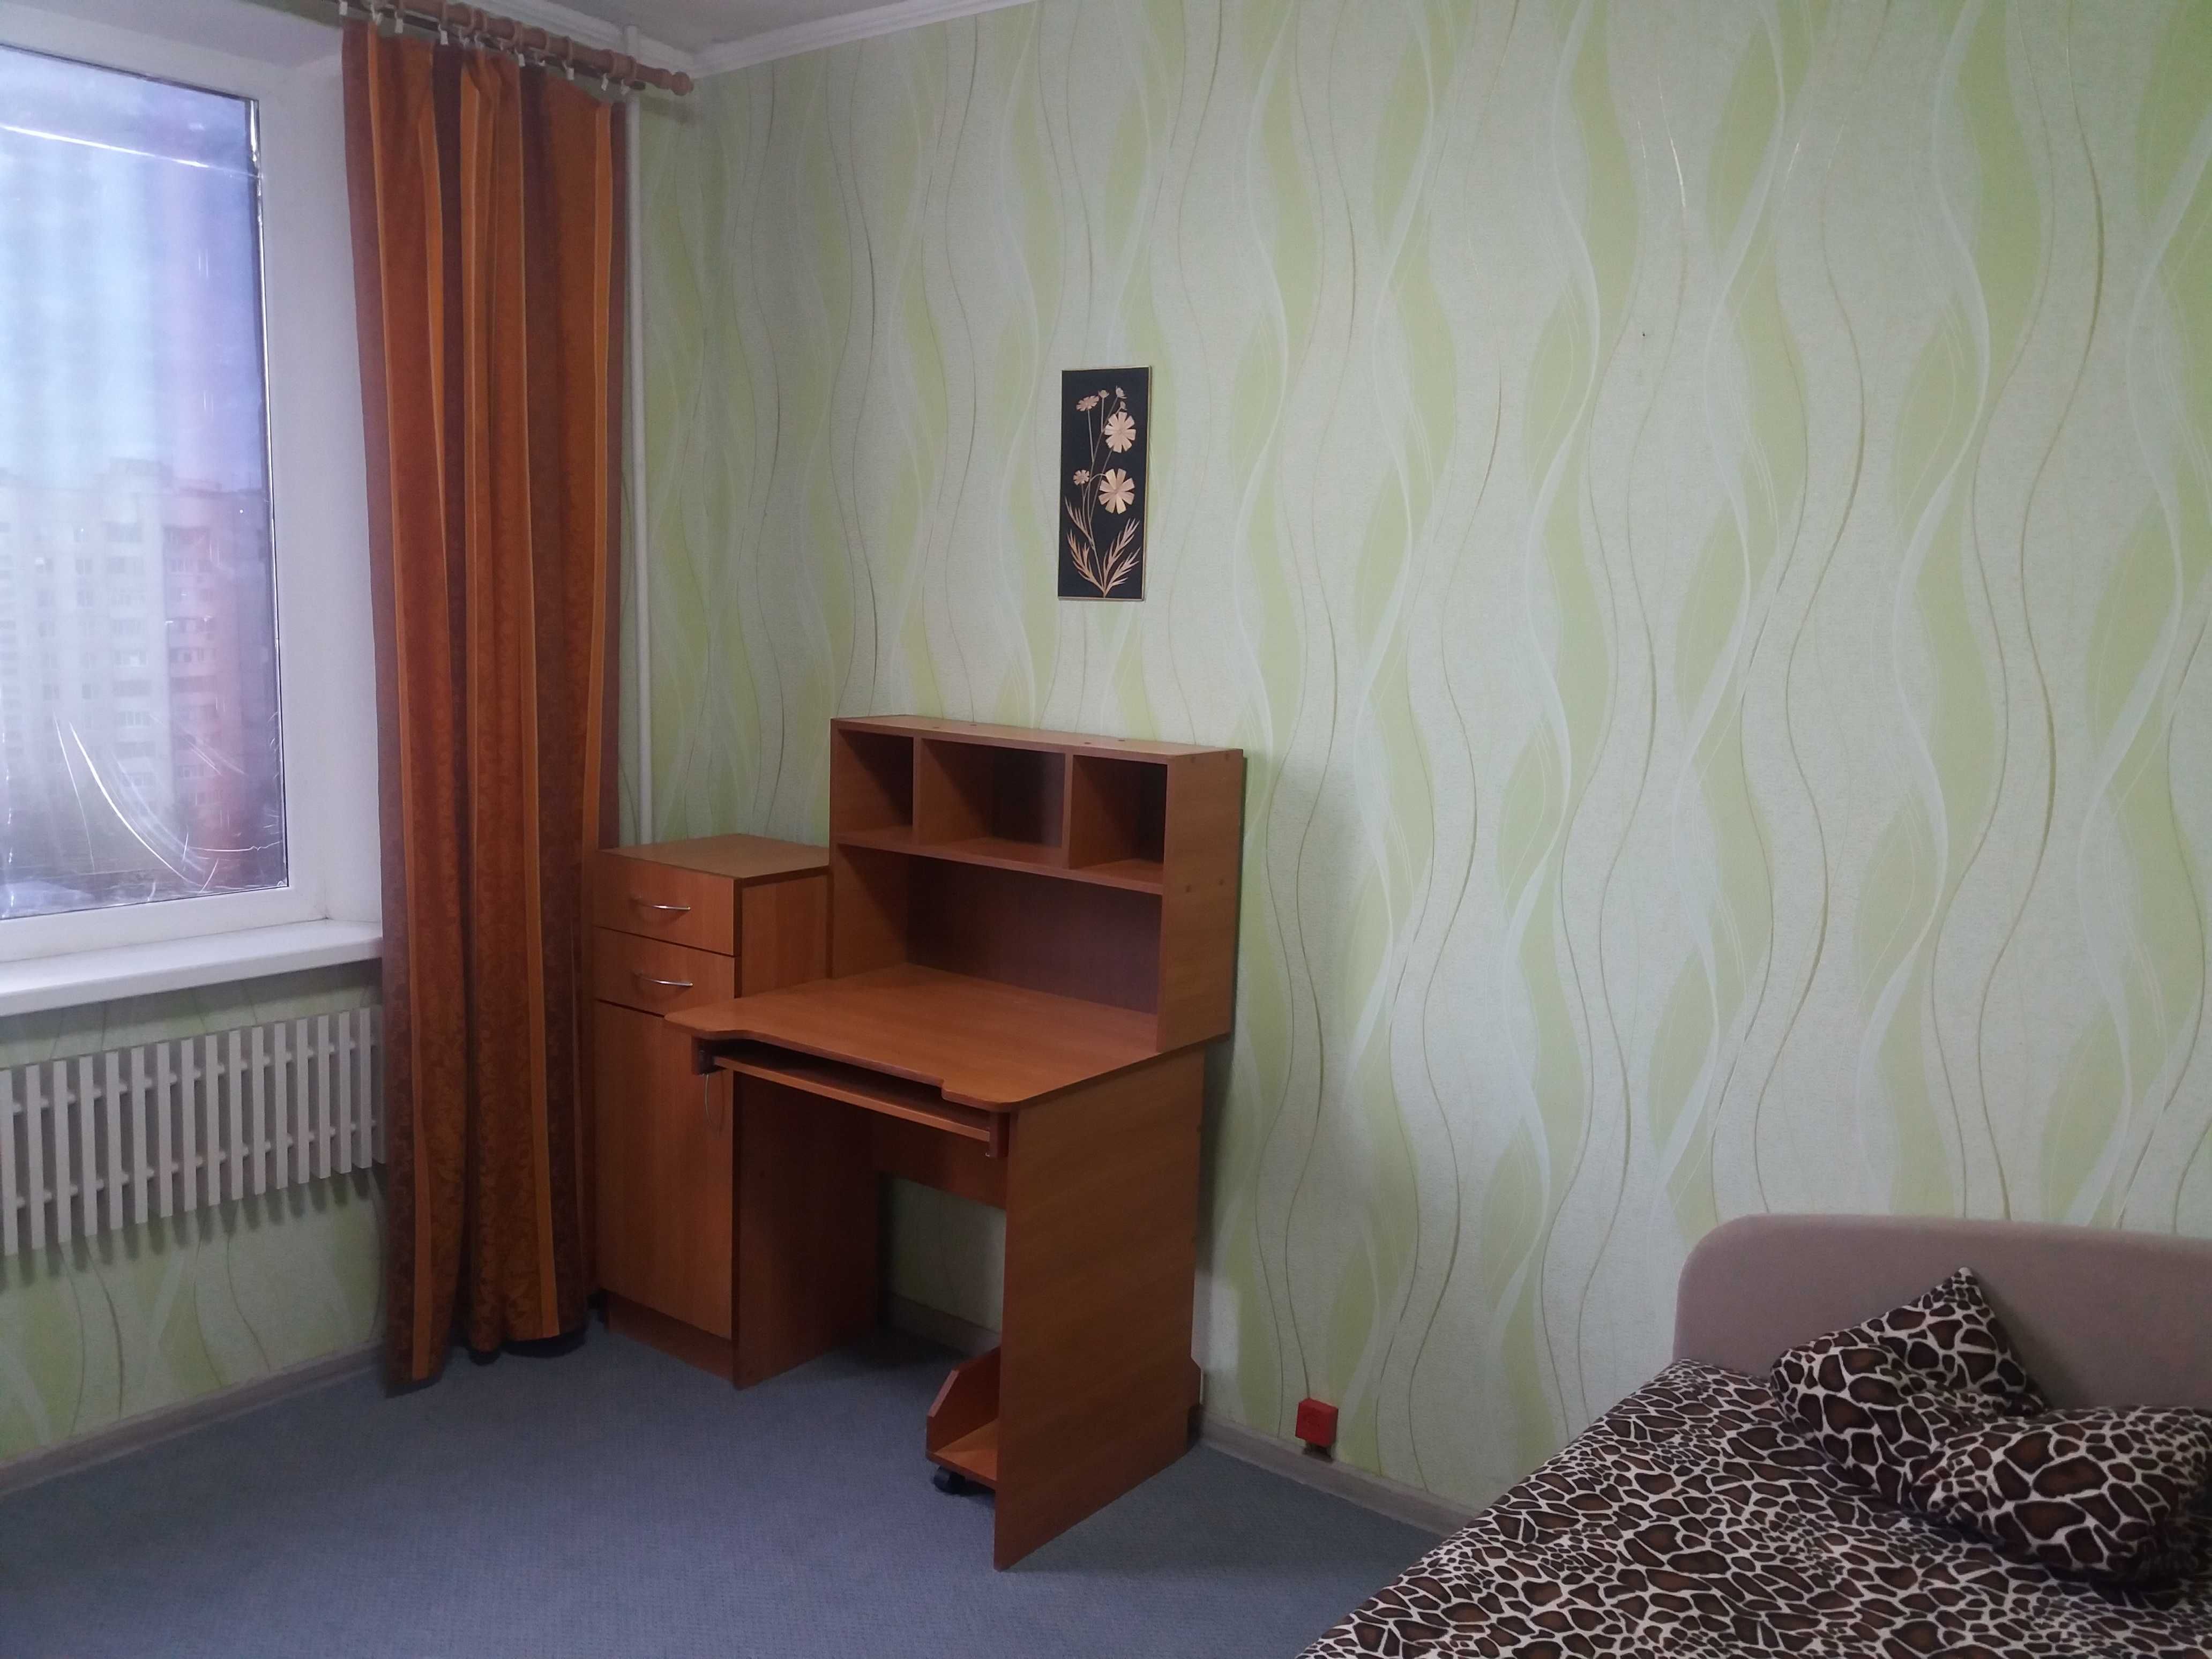 СДАМ в аренду ДВУХКОМНАТНУЮ квартиру на Алексеевке, Харьков.